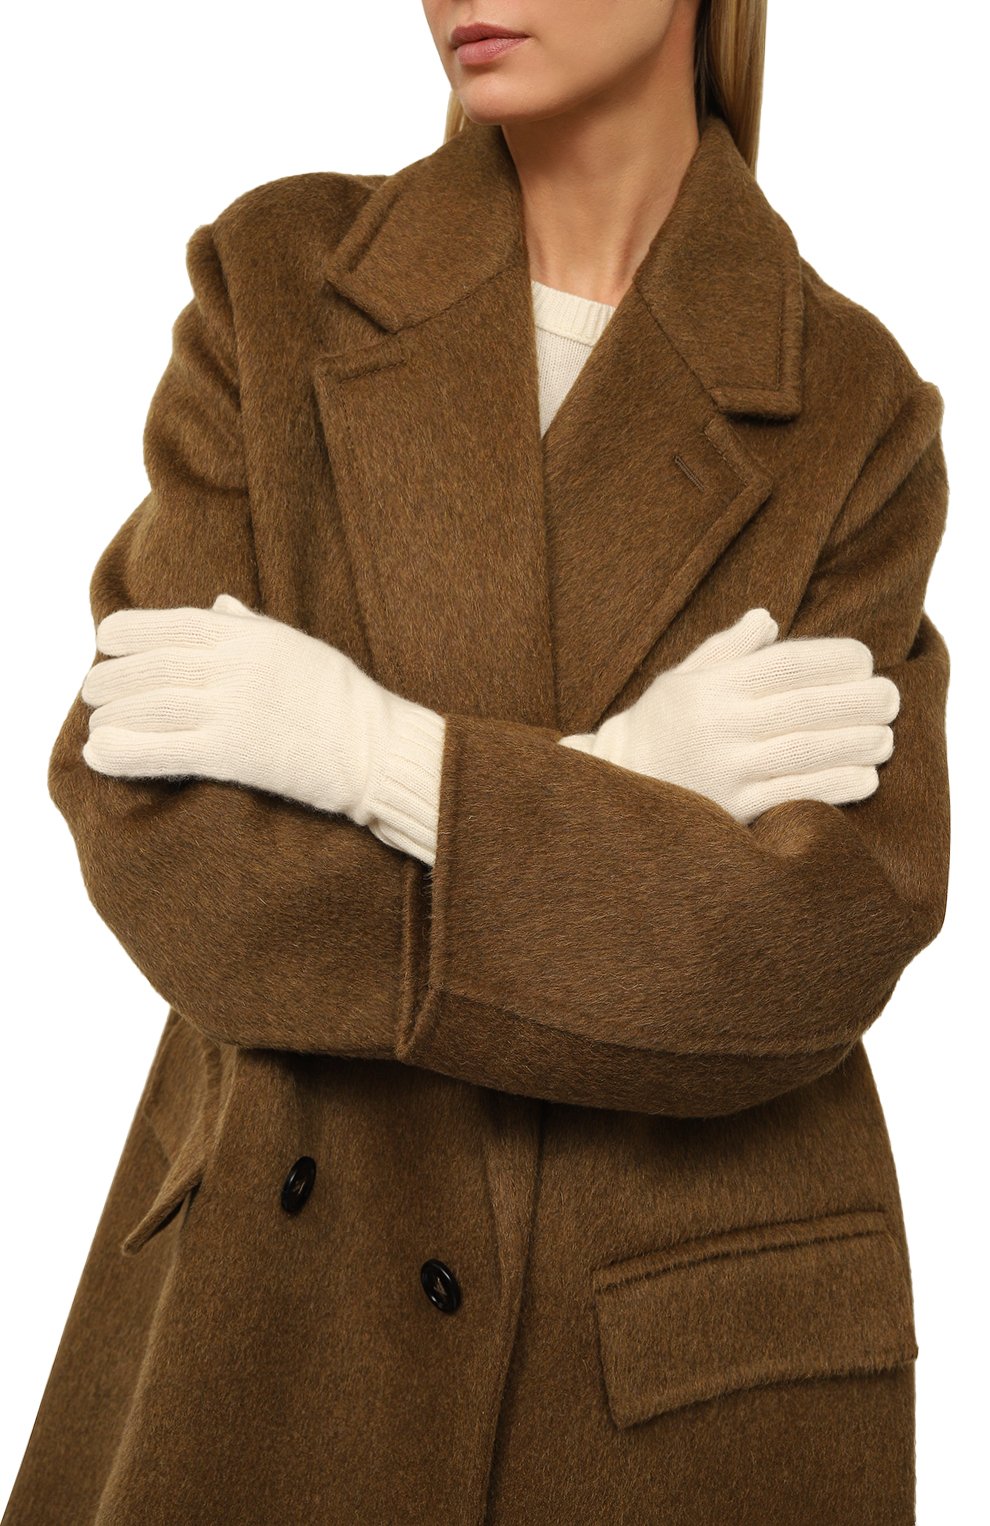 Женские кашемировые перчатки NOT SHY кремвого цвета, арт. 4102032C | Фото 2 (Материал: Текстиль, Кашемир, Шерсть)